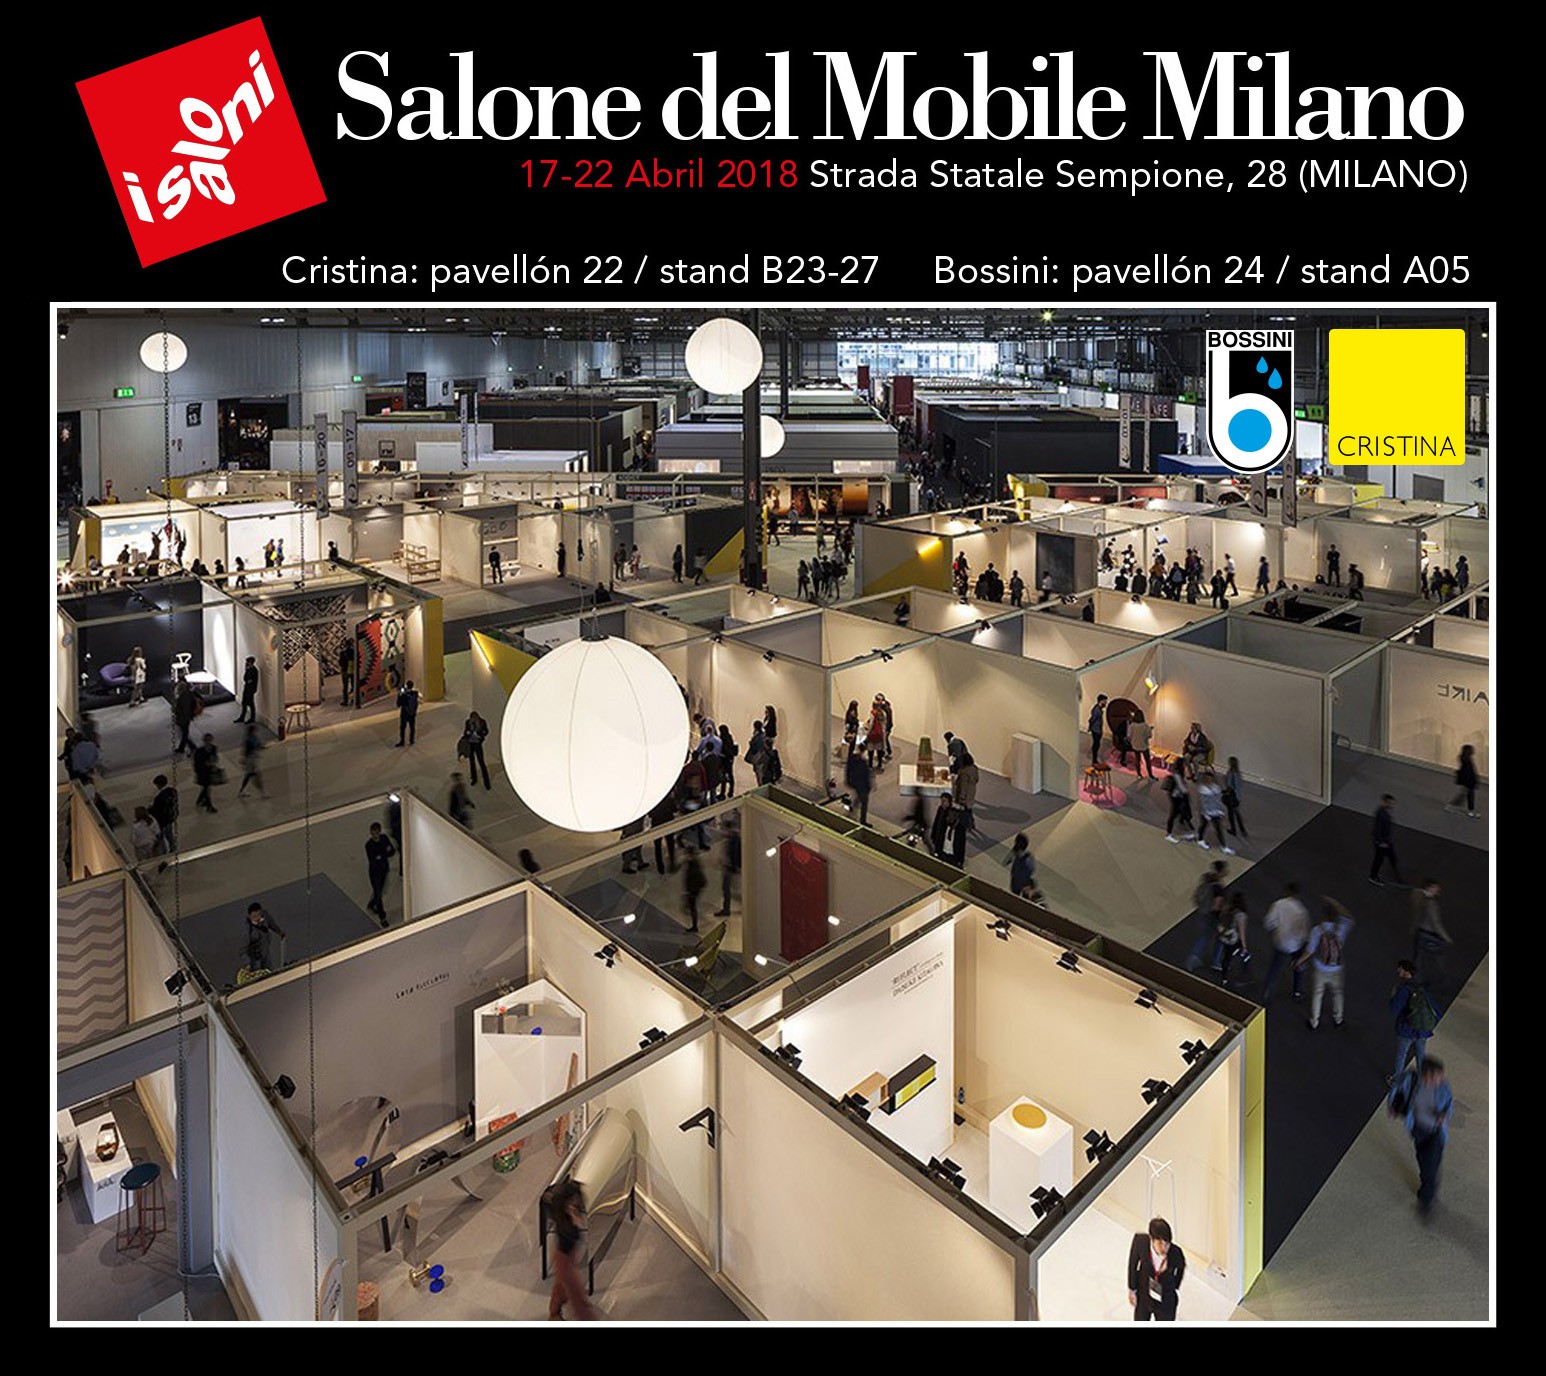 Salone del Mobile Milano 2018